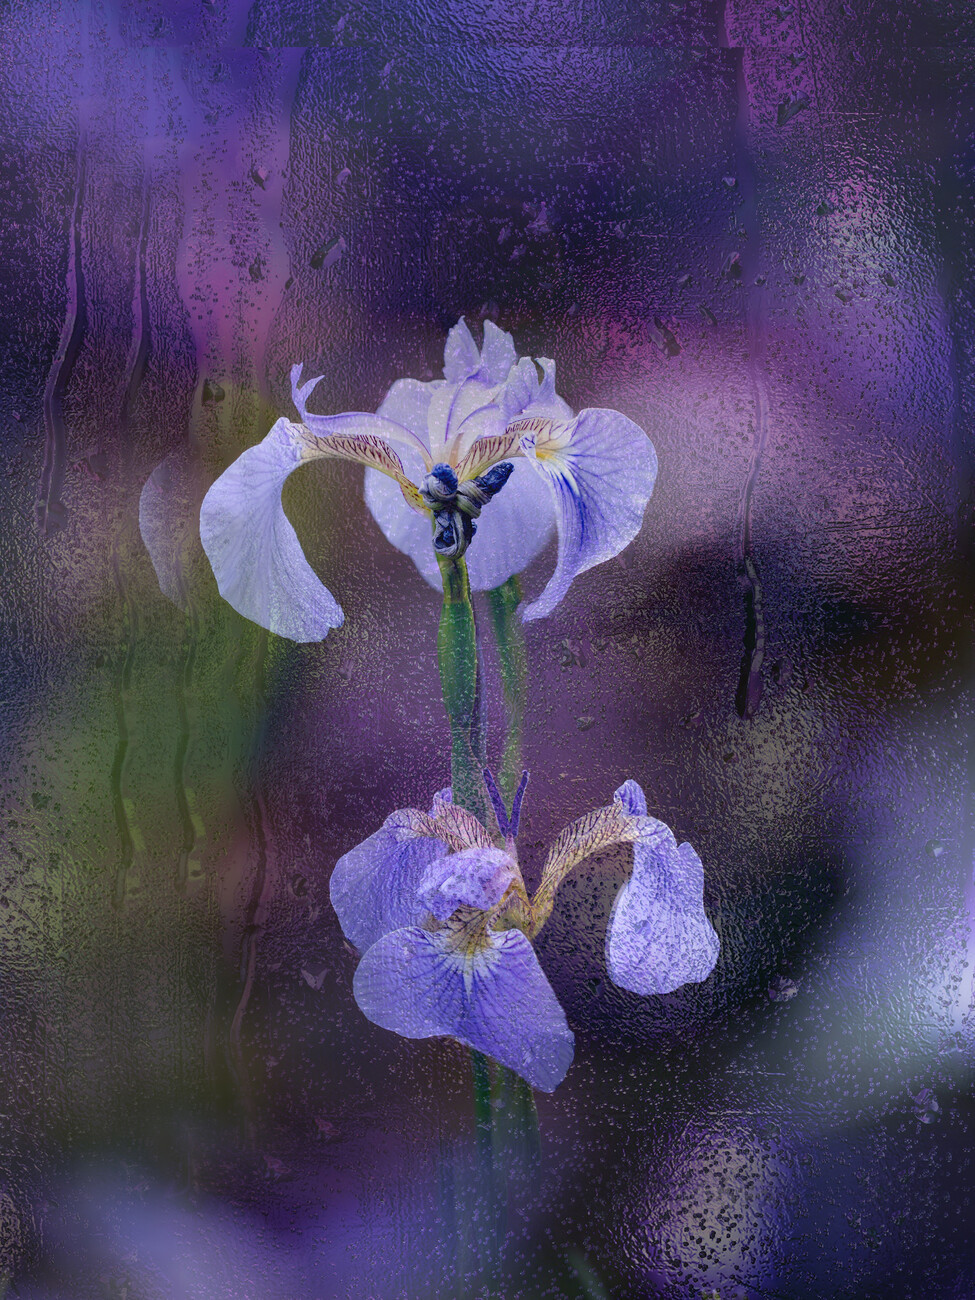 YoungIl Kim Umělecká fotografie Iris in rain, YoungIl Kim, (30 x 40 cm)